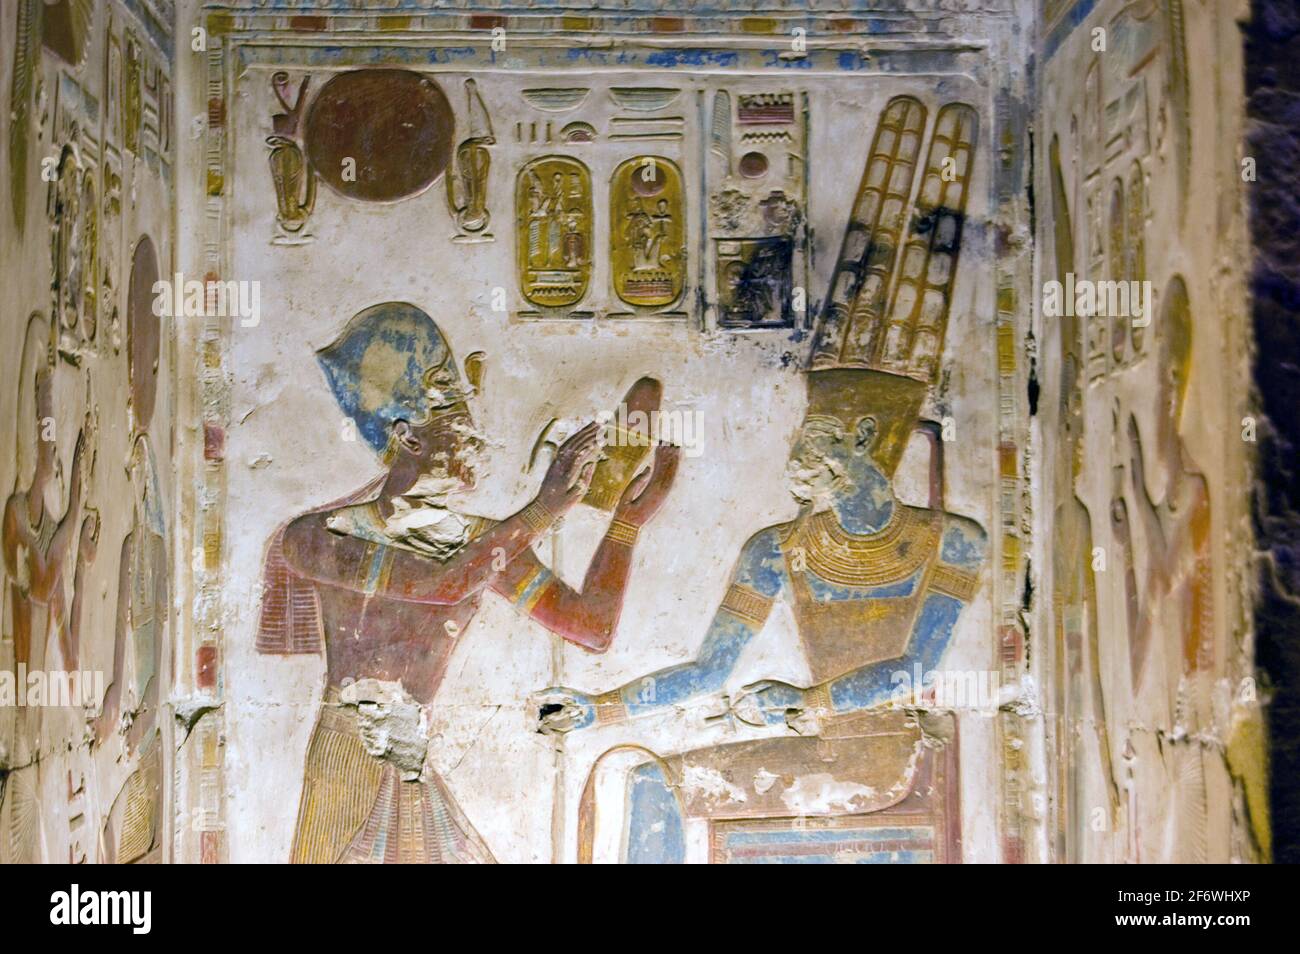 Une ancienne sculpture hiéroglyphique égyptienne du Pharoah Seti présentant un don au dieu Amun. Niche sculptée et peinte au Temple d'Abydos, Egyp Banque D'Images